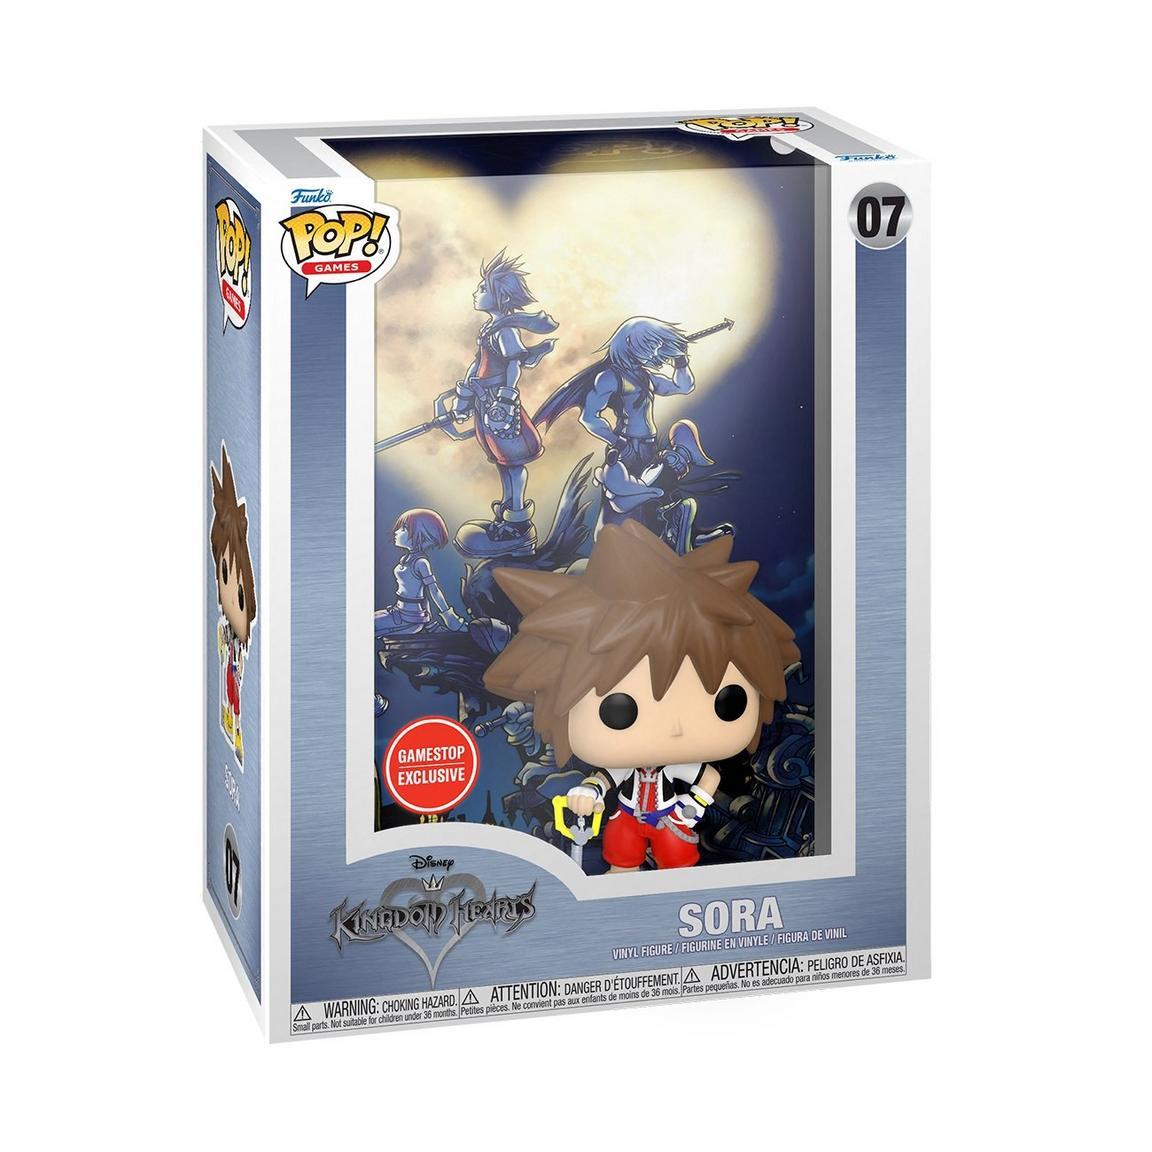 Funko POP! Games Gamestop Exclusive Kingdom Hearts Sora 5-inch Vinyl Figure